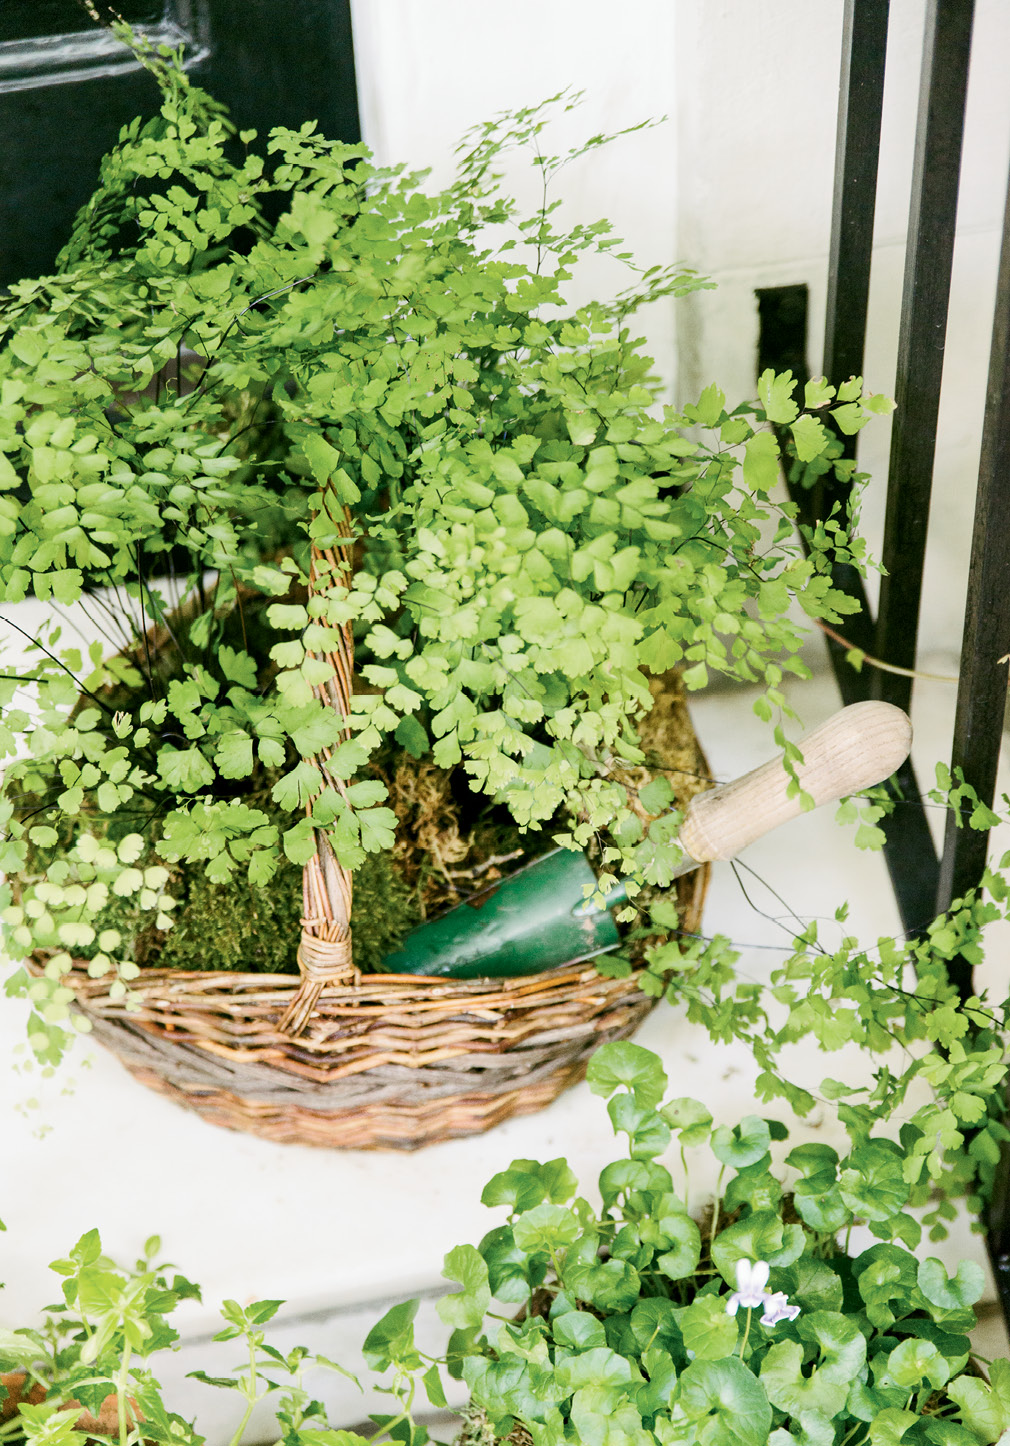 A basket of maidenhair fern